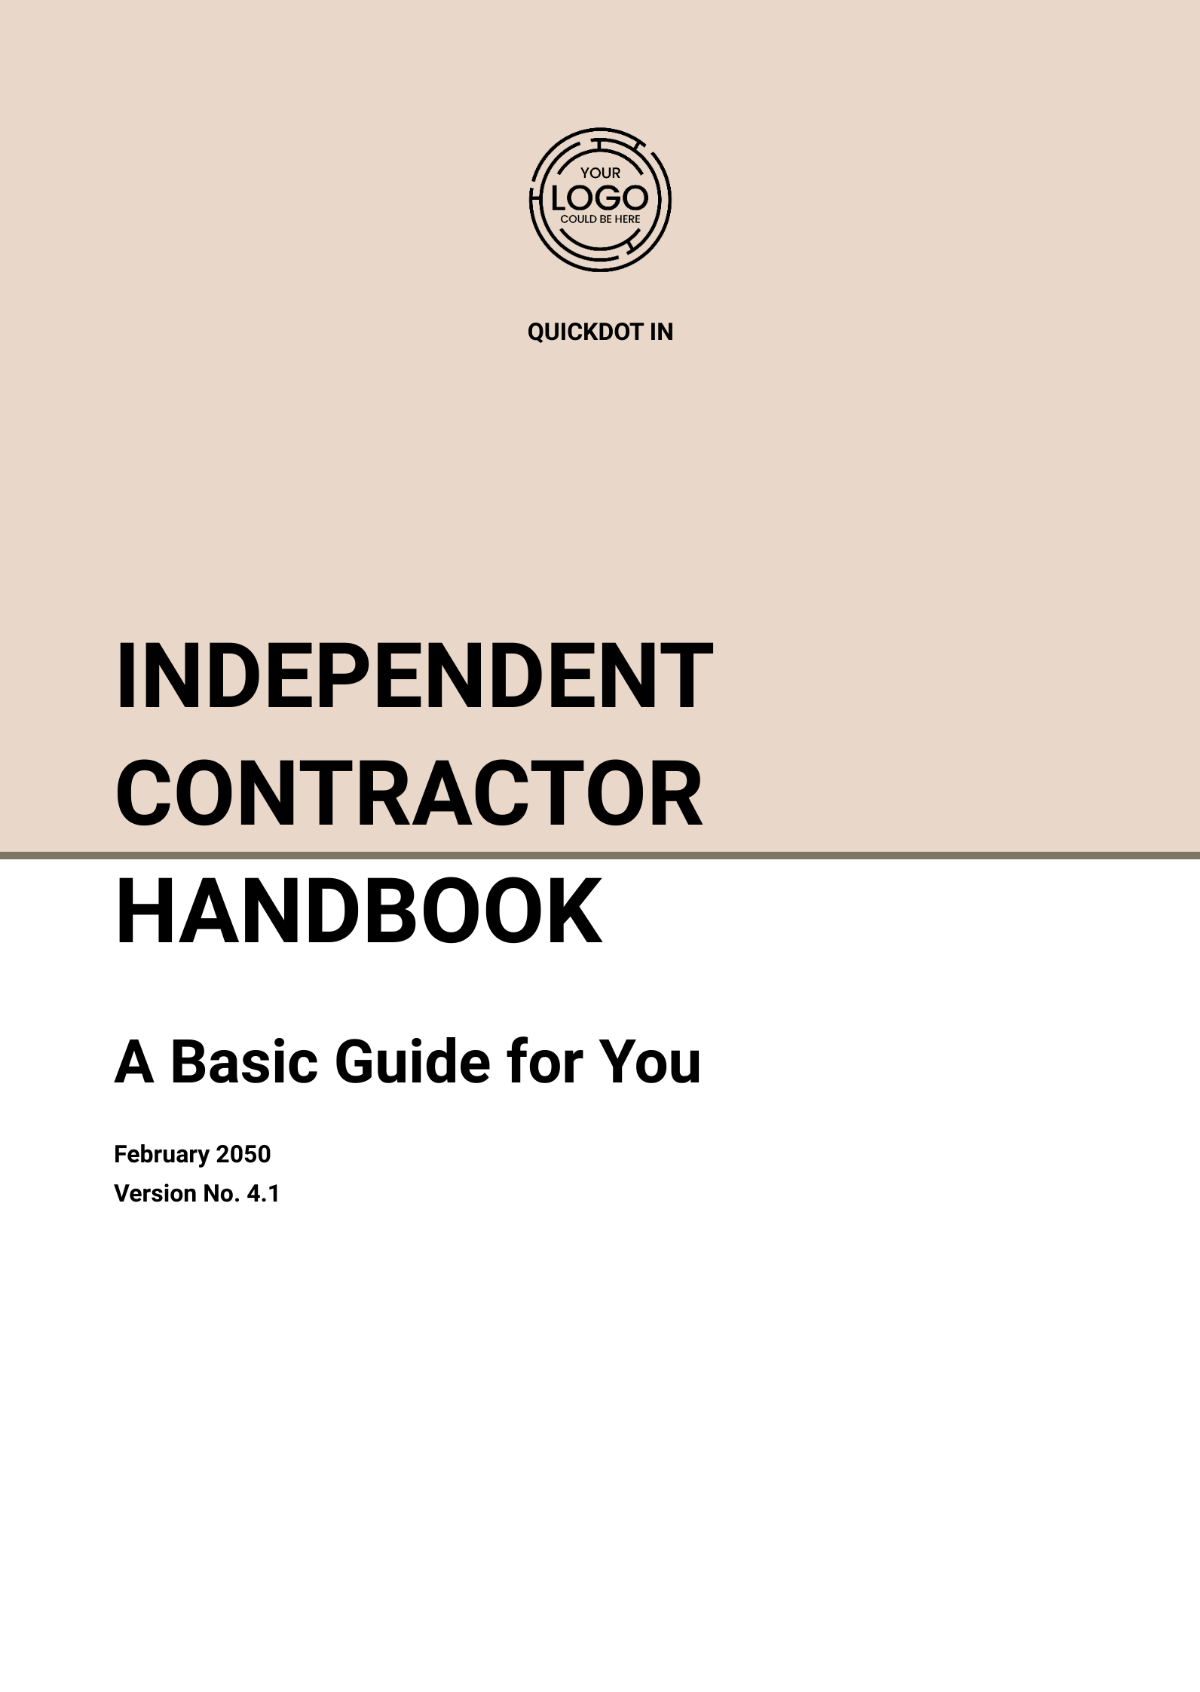 Independent Contractor Handbook Template